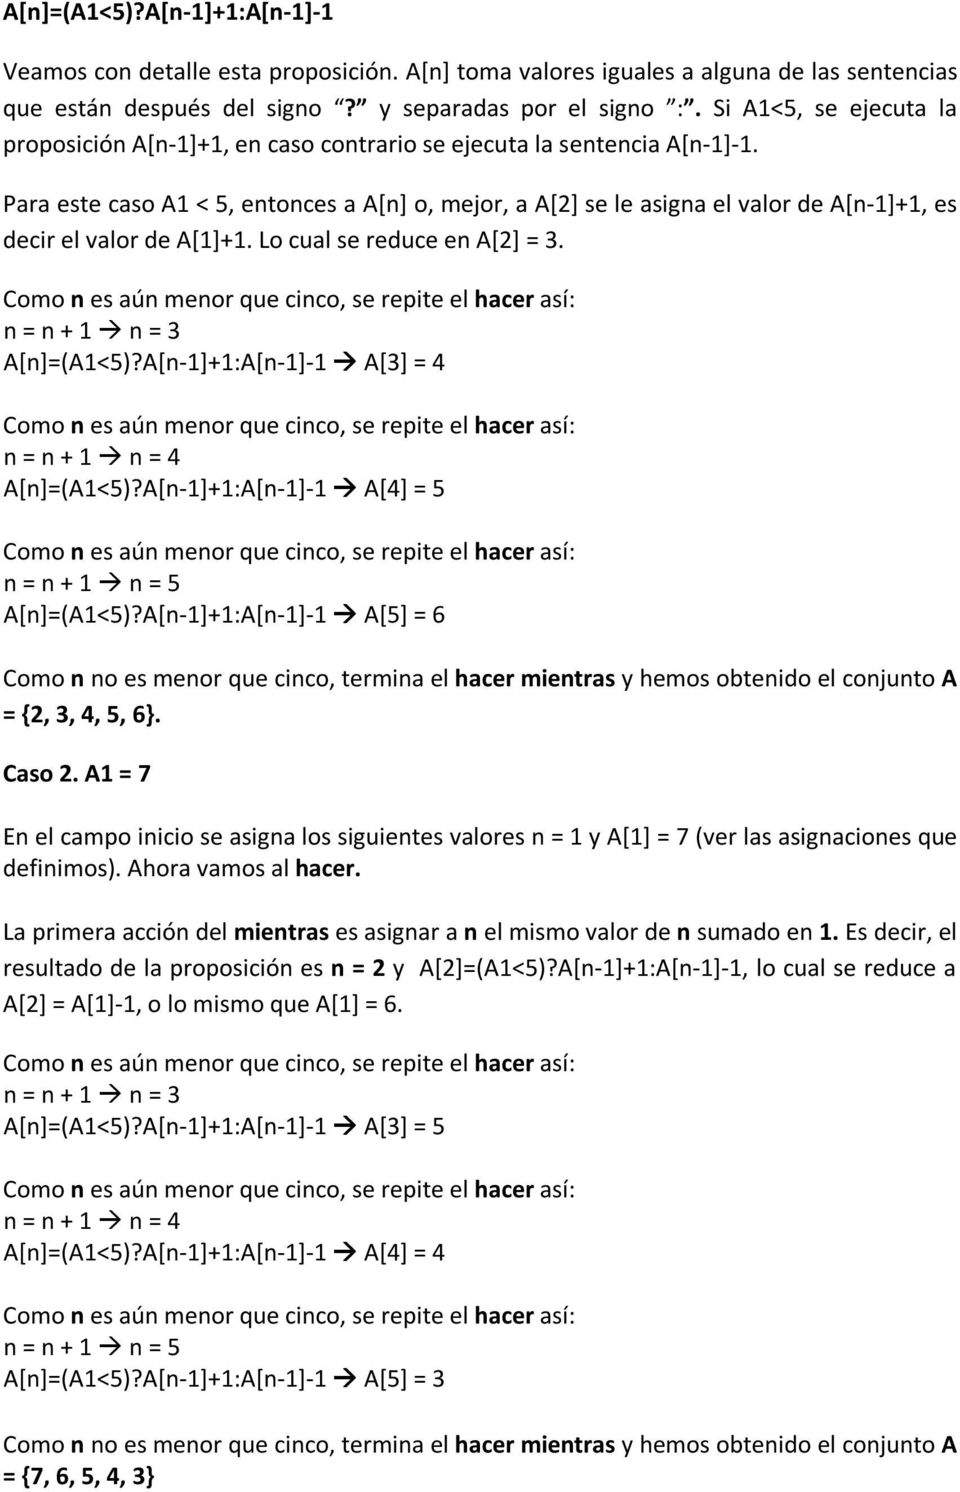 Para este caso A1 < 5, entonces a A[n] o, mejor, a A[2] se le asigna el valor de A[n-1]+1, es decir el valor de A[1]+1. Lo cual se reduce en A[2] = 3.